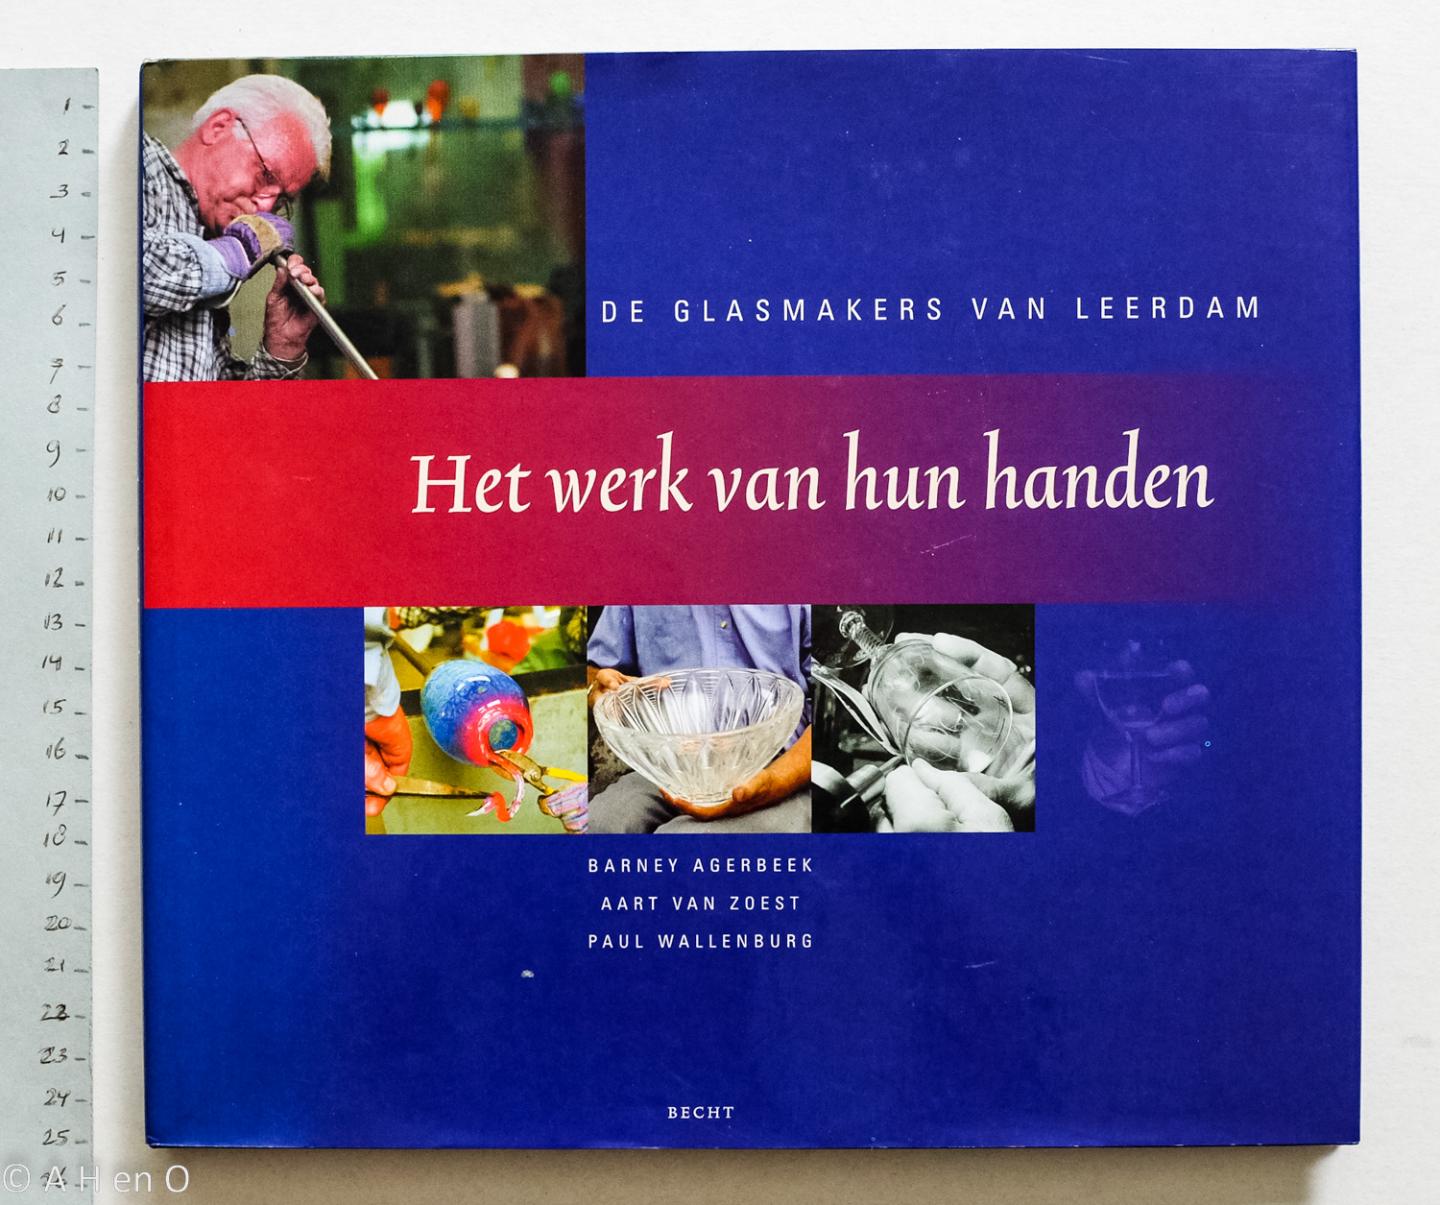 Agerbeek, Barney - Zoest, Aart van - Wallenburg, Paul - Het werk van hun handen / de glasmakers van Leerdam